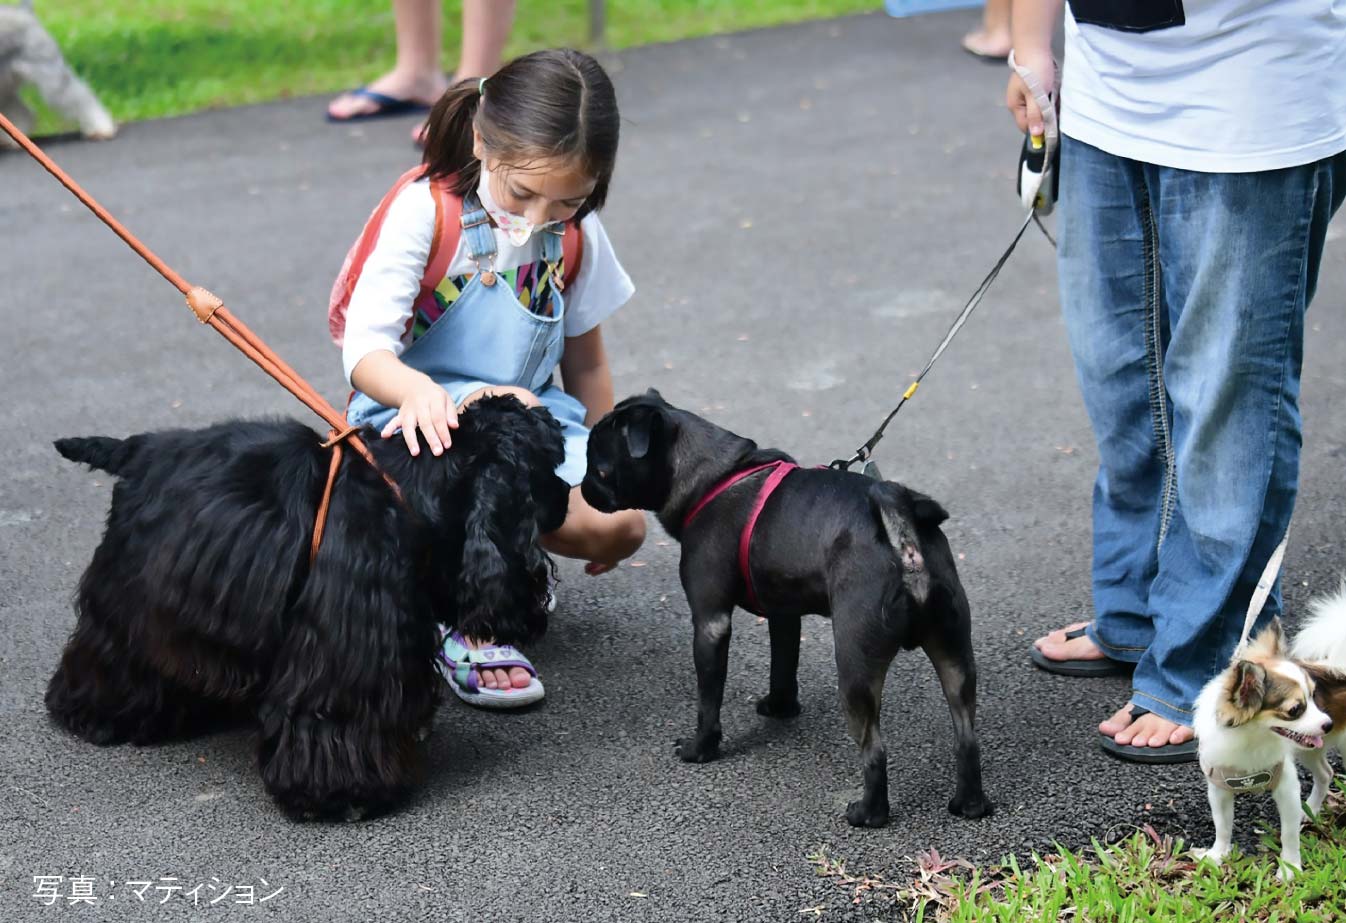 ベンジャキティ公園 犬同伴の散歩が可能に　ー　17日から都内のベンジャキティ森林公園で、犬同伴の散歩が可能なエリアがオープン。同伴可能エリアは1.6万㎡を誇り、初日には犬愛好家によるトリミングなどのイベントが開催された。入園の際、飼い主にはリード装着、犬の登録（ワクチン接種証明書）と入園時間の事前登録、フンの片付けなどの条件が求められる。